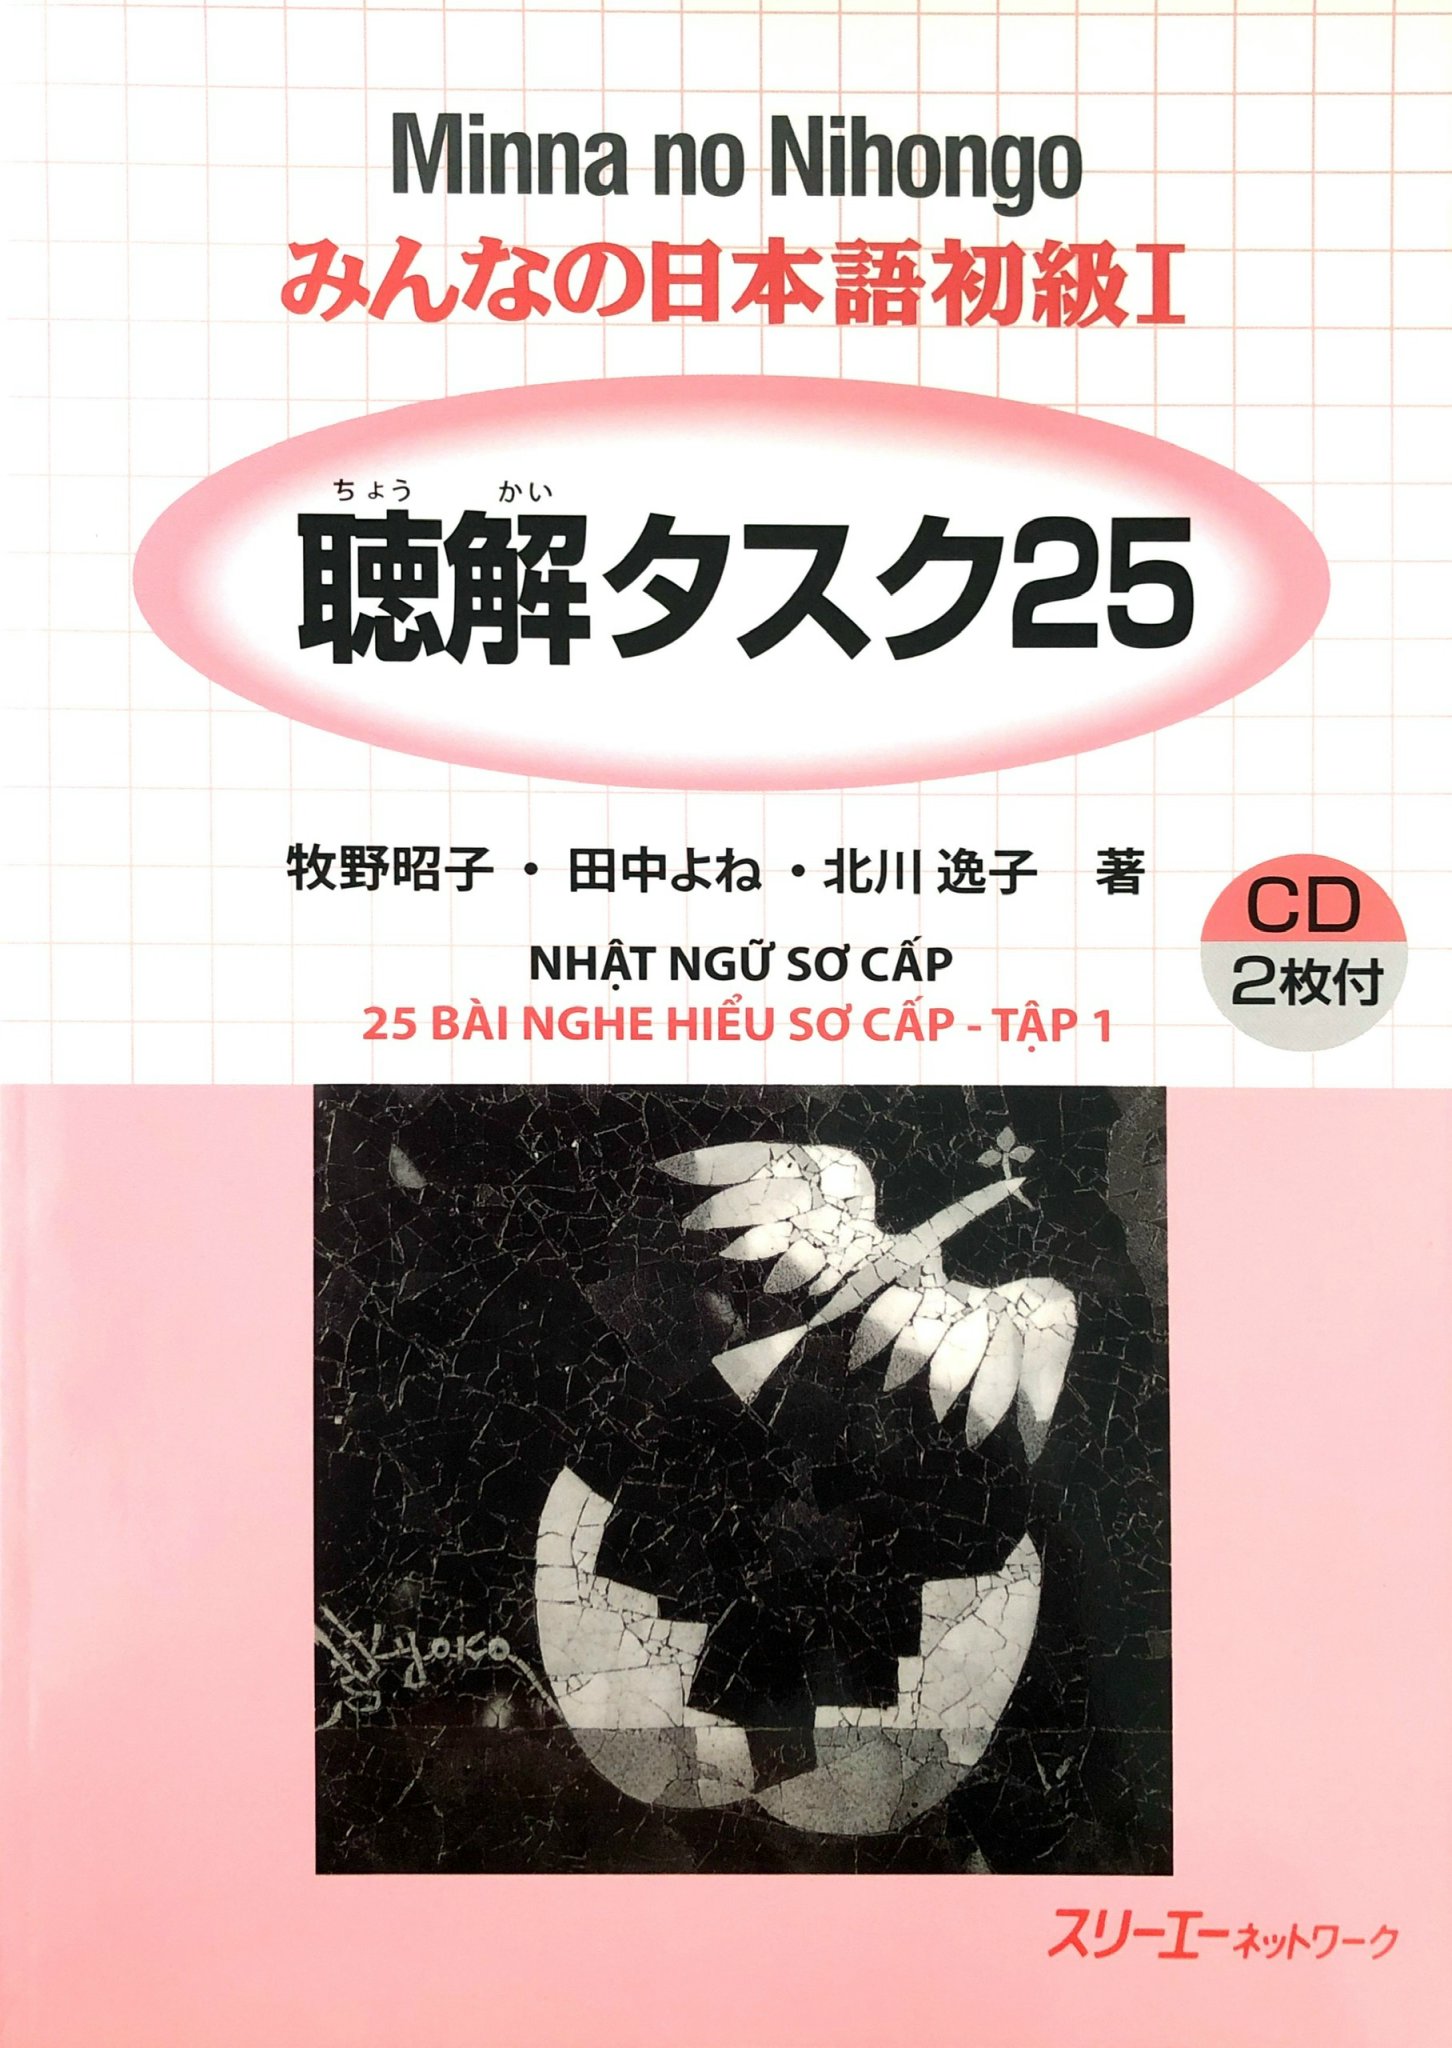 Minna no Nihongo Sơ cấp 1 - 25 Bài Nghe Hiểu (Bản Cũ)